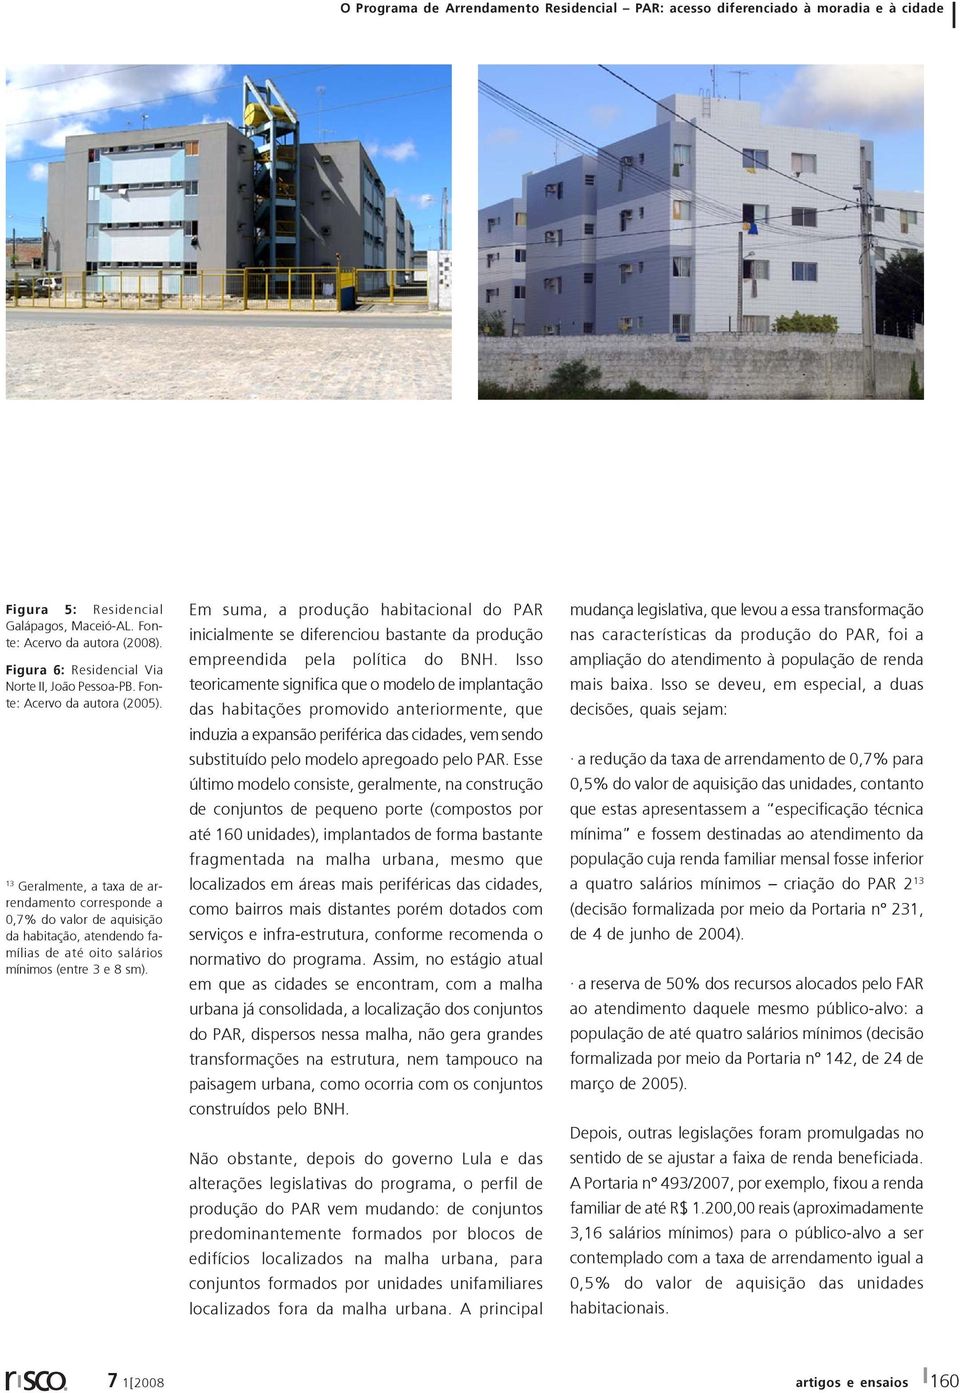 Em suma, a produção habitacional do PAR inicialmente se diferenciou bastante da produção empreendida pela política do BNH.